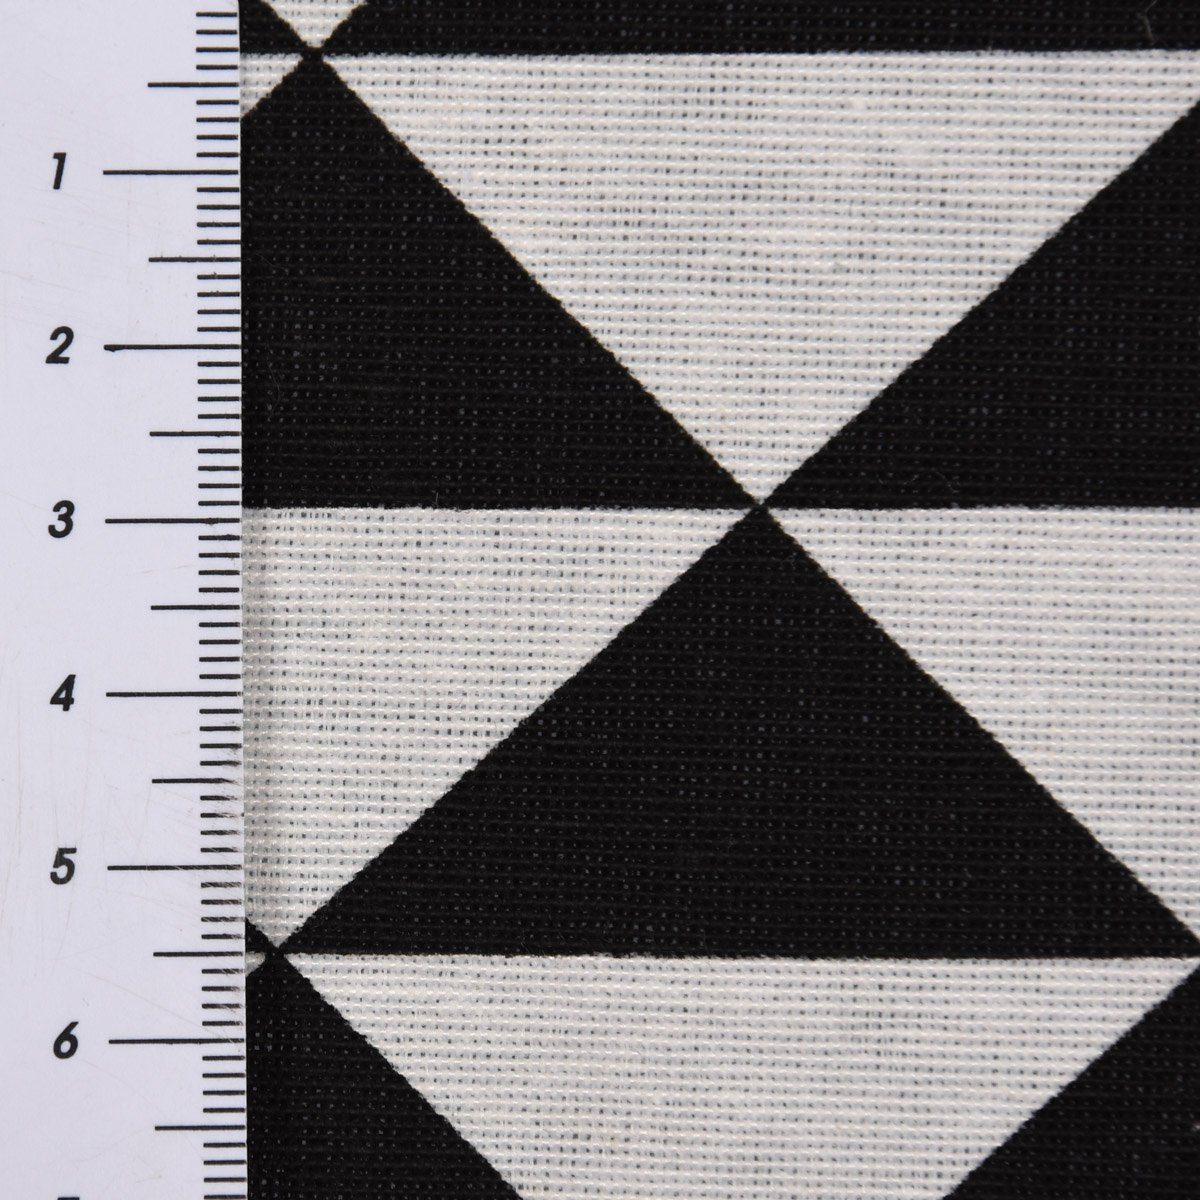 SCHÖNER LEBEN. Kissenhülle SCHÖNER made schwarz Dreiecke weiß handmade, verschiedene Germany in Kissenhülle LEBEN. Größen